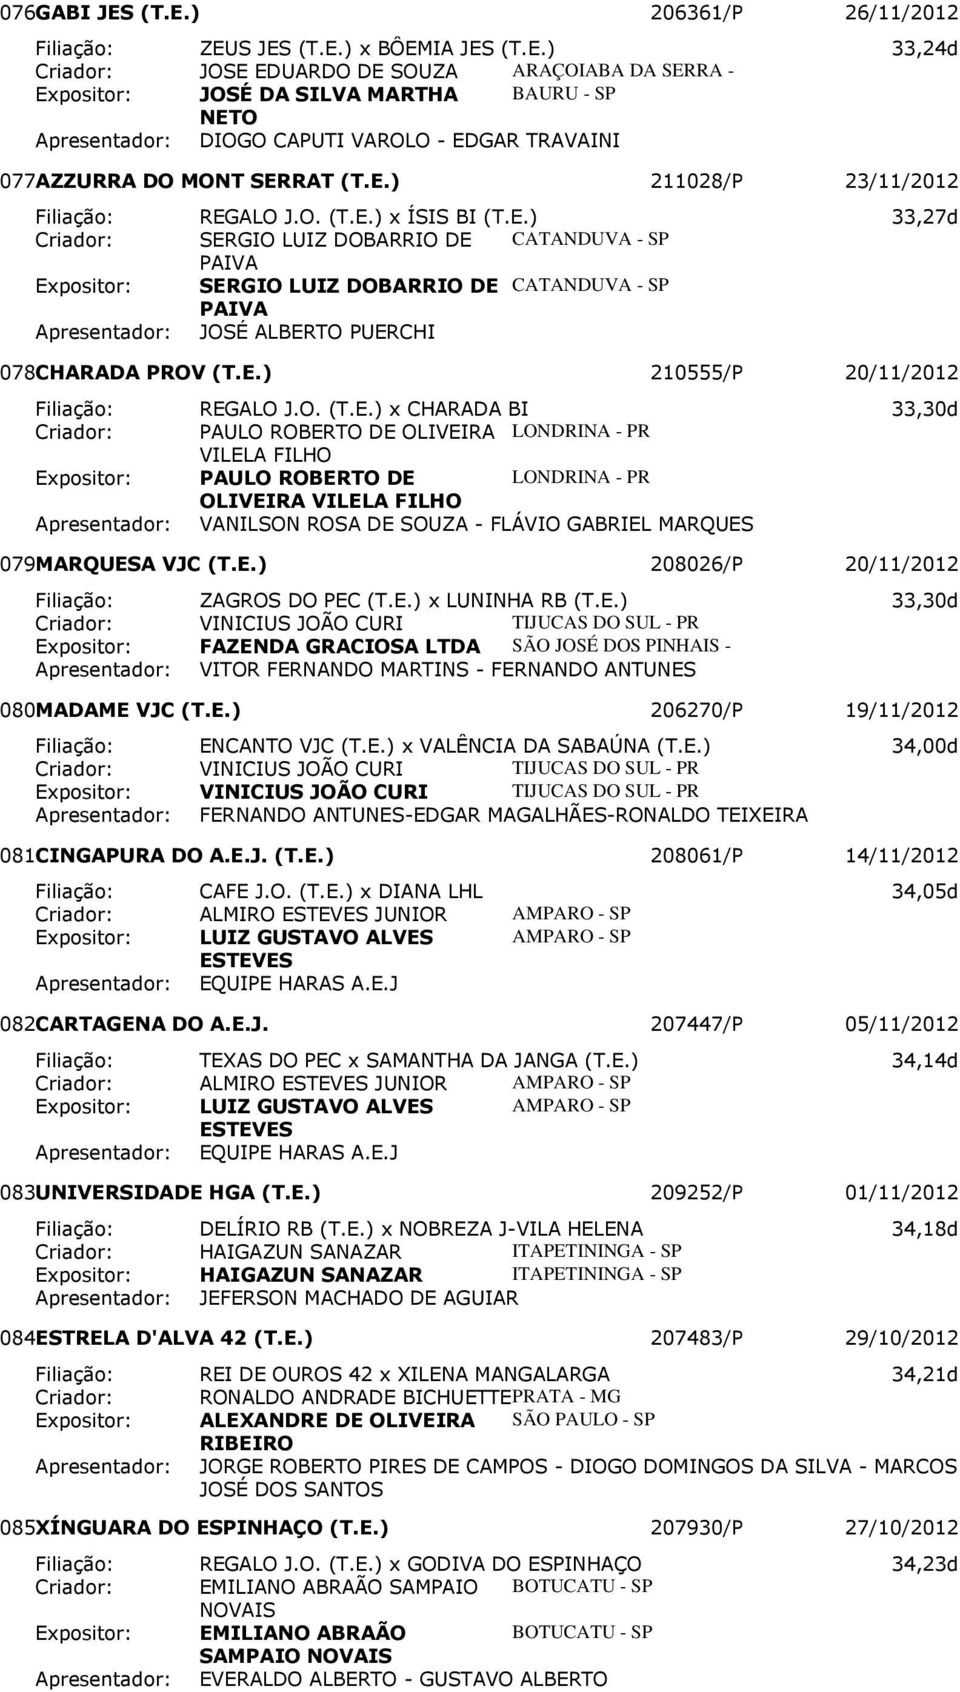 MONT SERRAT 211028/P 23/11/2012 Filiação: REGALO J.O. x ÍSIS BI 33,27d Criador: SERGIO LUIZ DOBARRIO DE CATANDUVA - SP PAIVA Expositor: SERGIO LUIZ DOBARRIO DE CATANDUVA - SP PAIVA JOSÉ ALBERTO